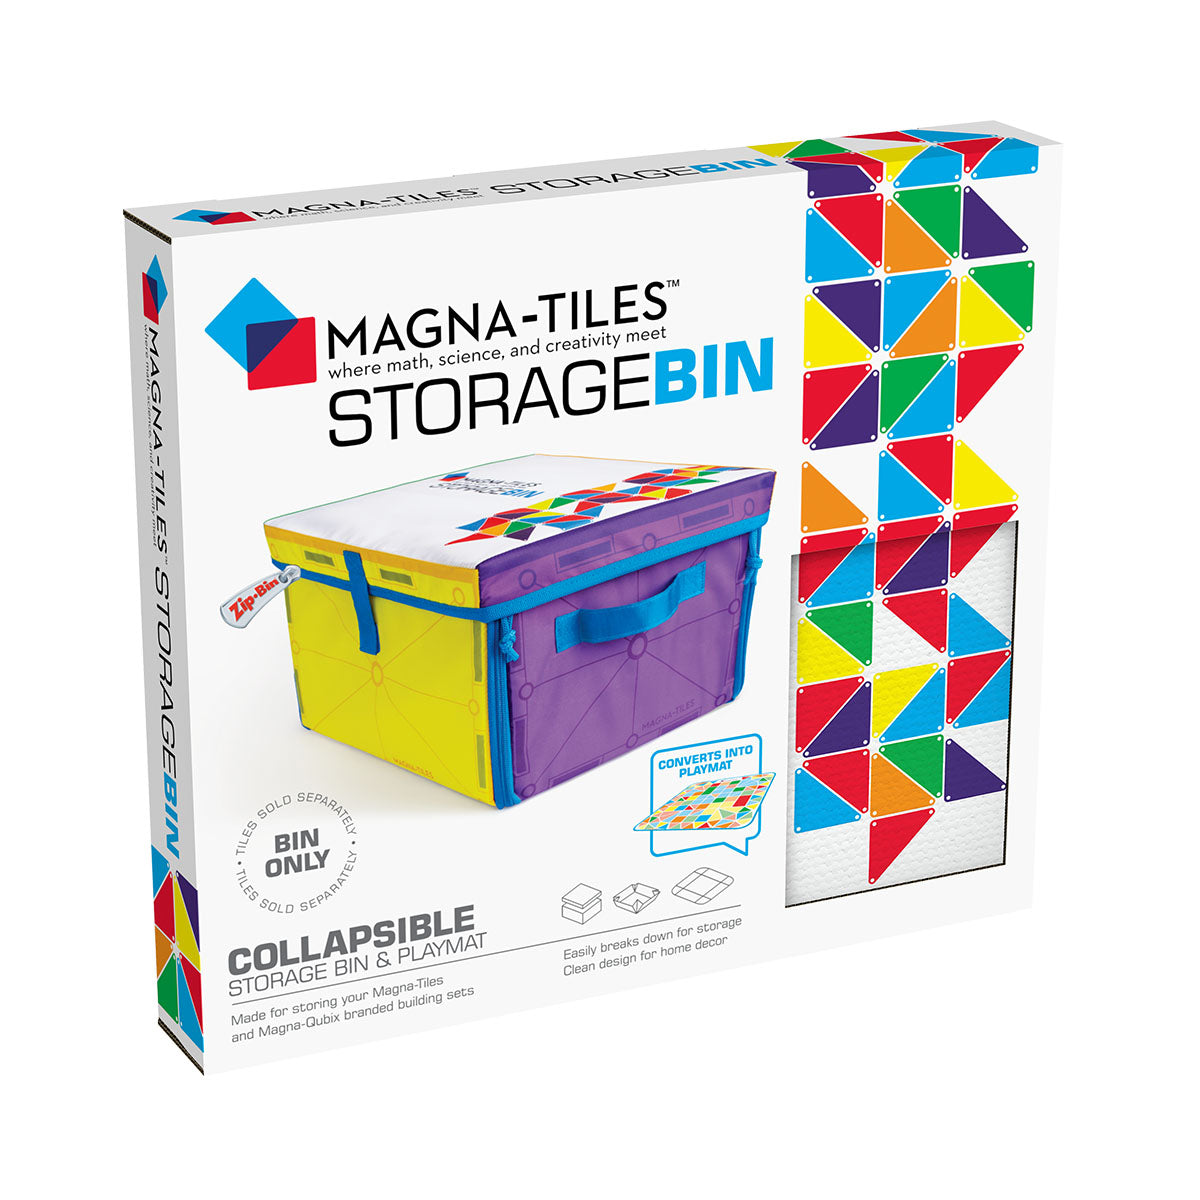 De Magna-Tiles Storage bin is de perfecte opbergdoos voor al jouw Magna-Tiles! Deze opbergdoos is niet alleen een plek met opbergruimte, maar kan ook veranderen in een speelmat. VanZus.